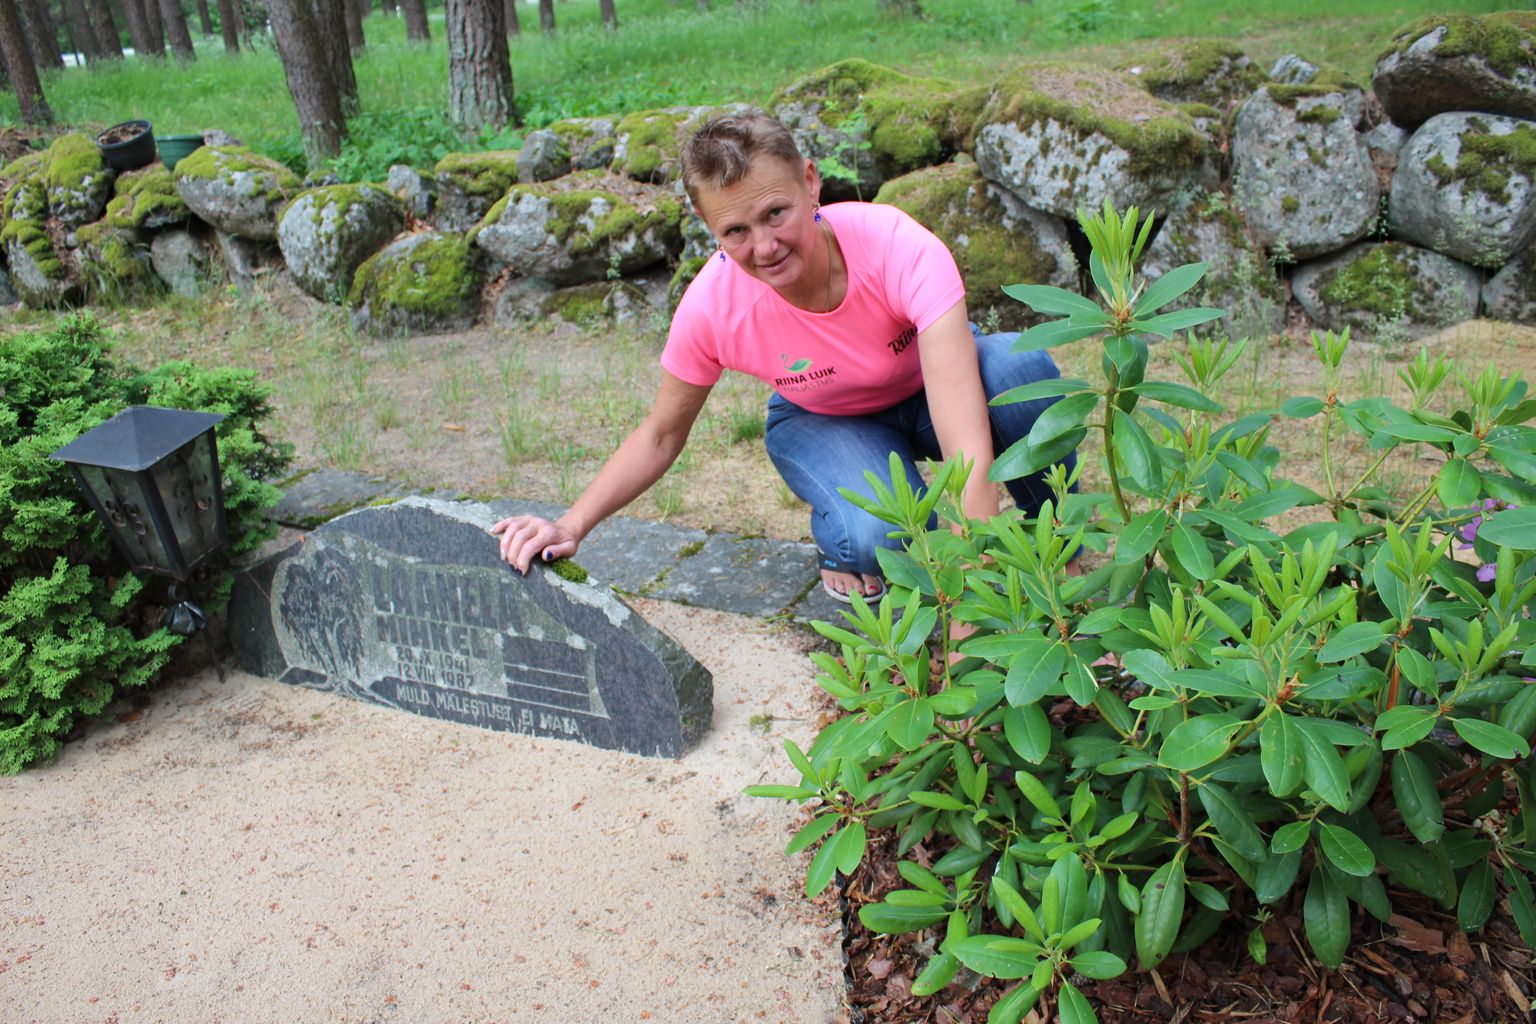 Haljastaja Riina Luik istutas isa kalmule rododendroni, sest hauaplats asub kalmistu nurgas. Igihaljas rododendronipõõsas ei varjuta teisi mälestusplatse ja sobib männimetsa alla.